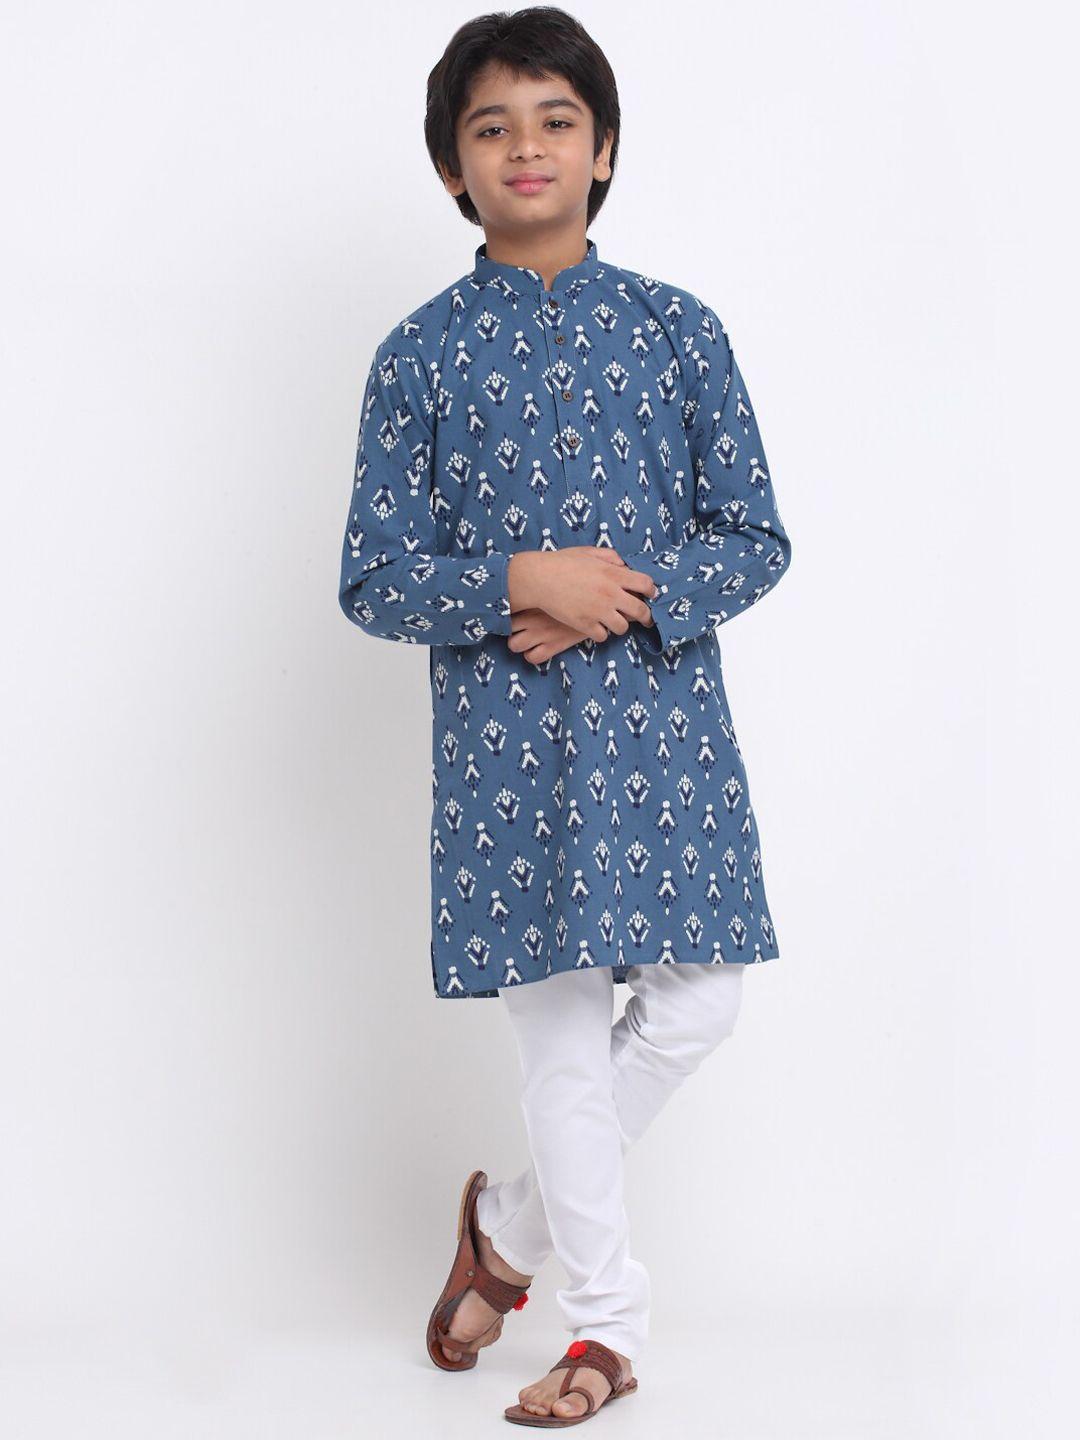 kraft india boys blue ethnic motifs printed kurta with pyjamas